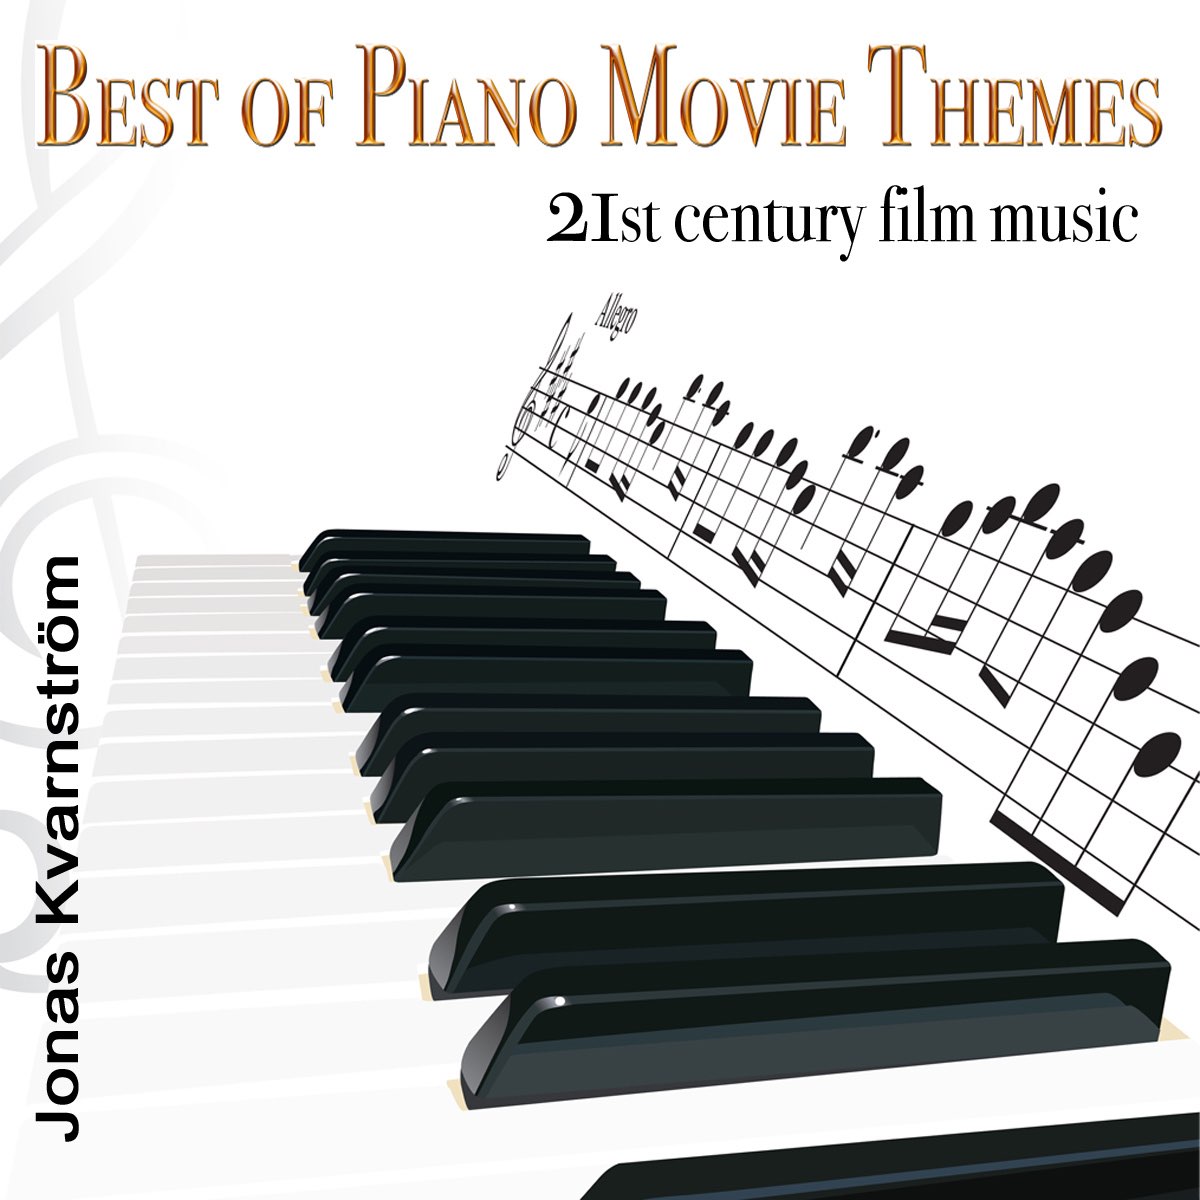 Best of Piano Movie Themes (21st Century Film Music) - Album by Jonas  Kvarnström - Apple Music